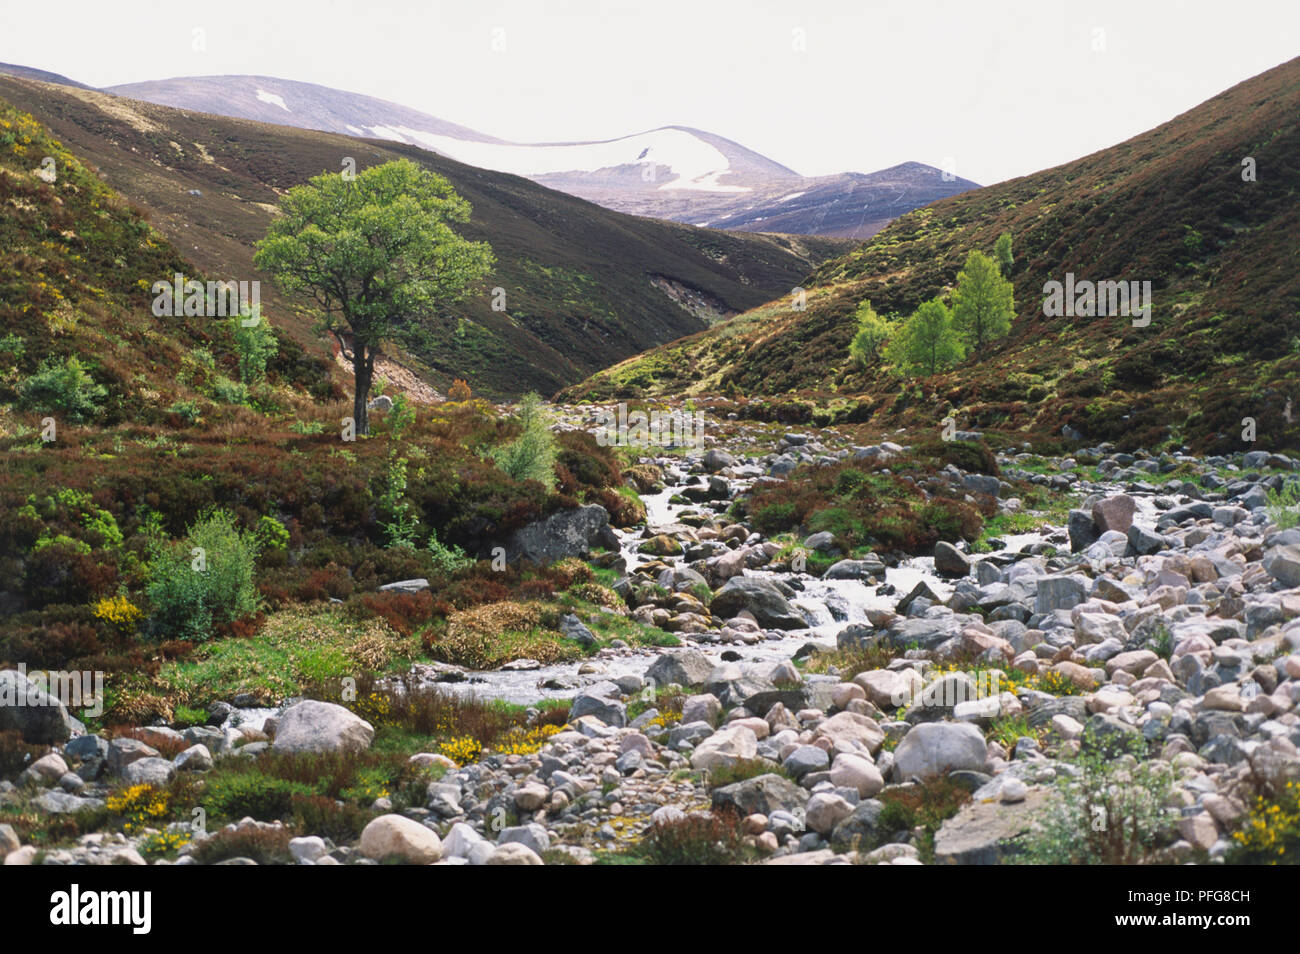 Gran Bretaña, Escocia, mesetas, paisajes silvestres de la ladera, incluyendo, arbustos, arroyos y tierras altas. Foto de stock